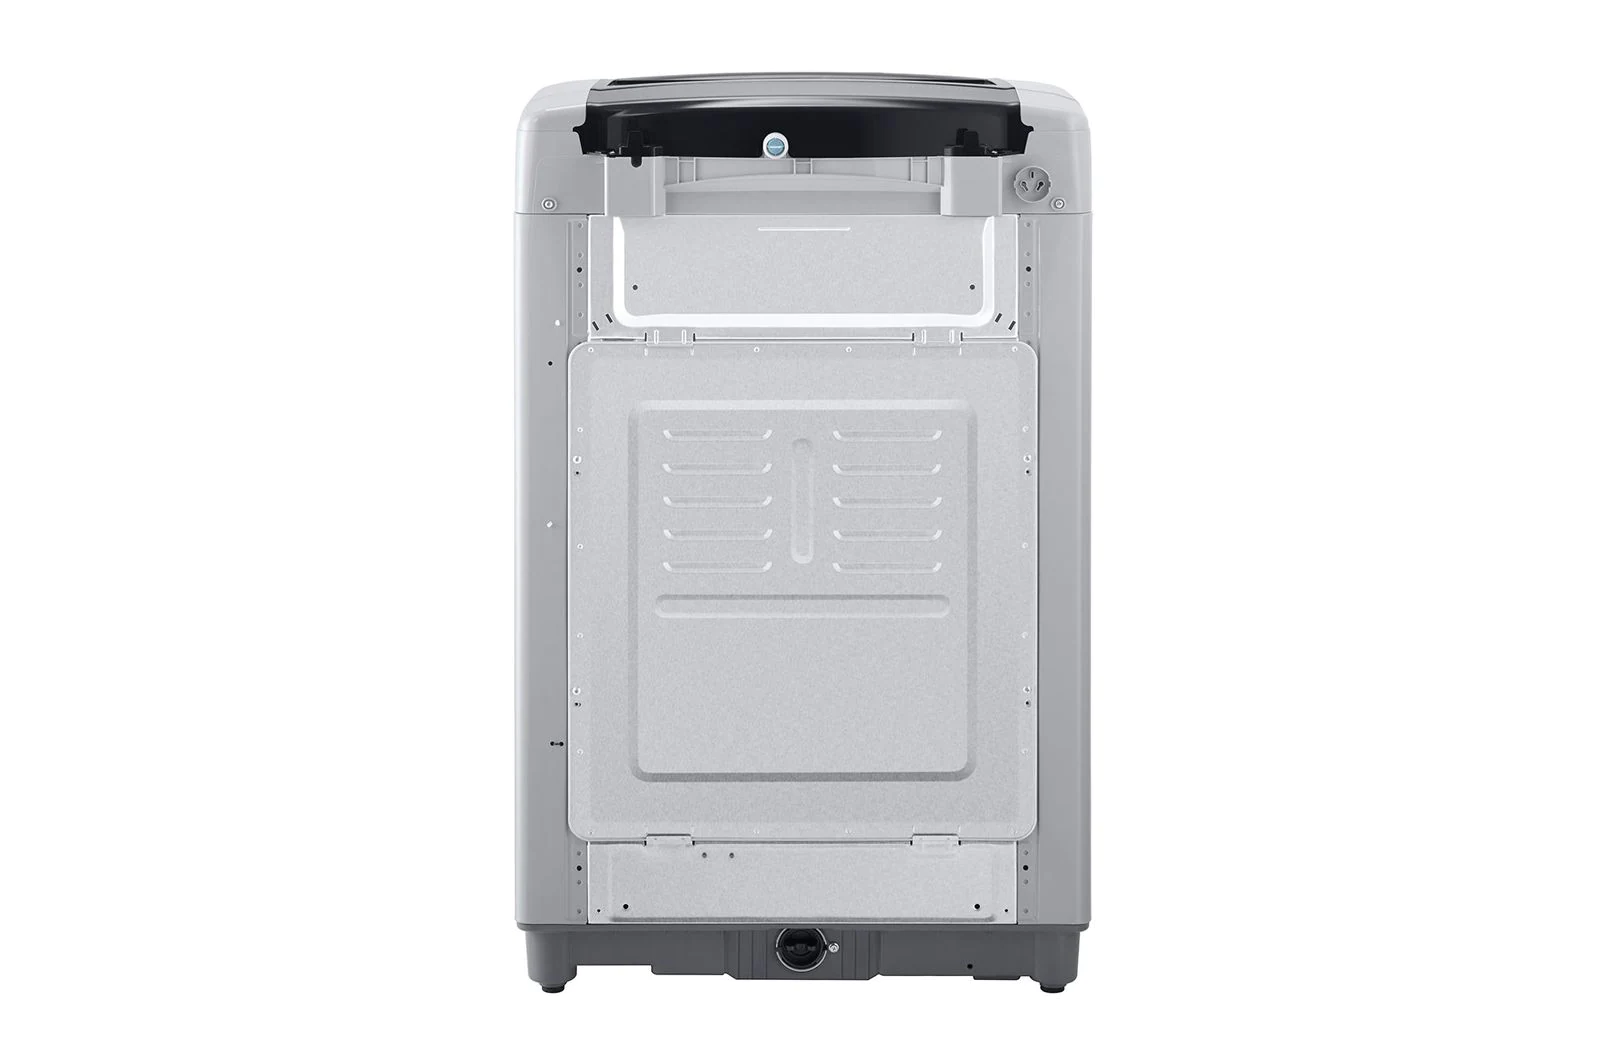 เครื่องซักผ้าฝาบน รุ่น T2555VSPM ระบบ Smart Inverter ความจุซัก 15 กก.